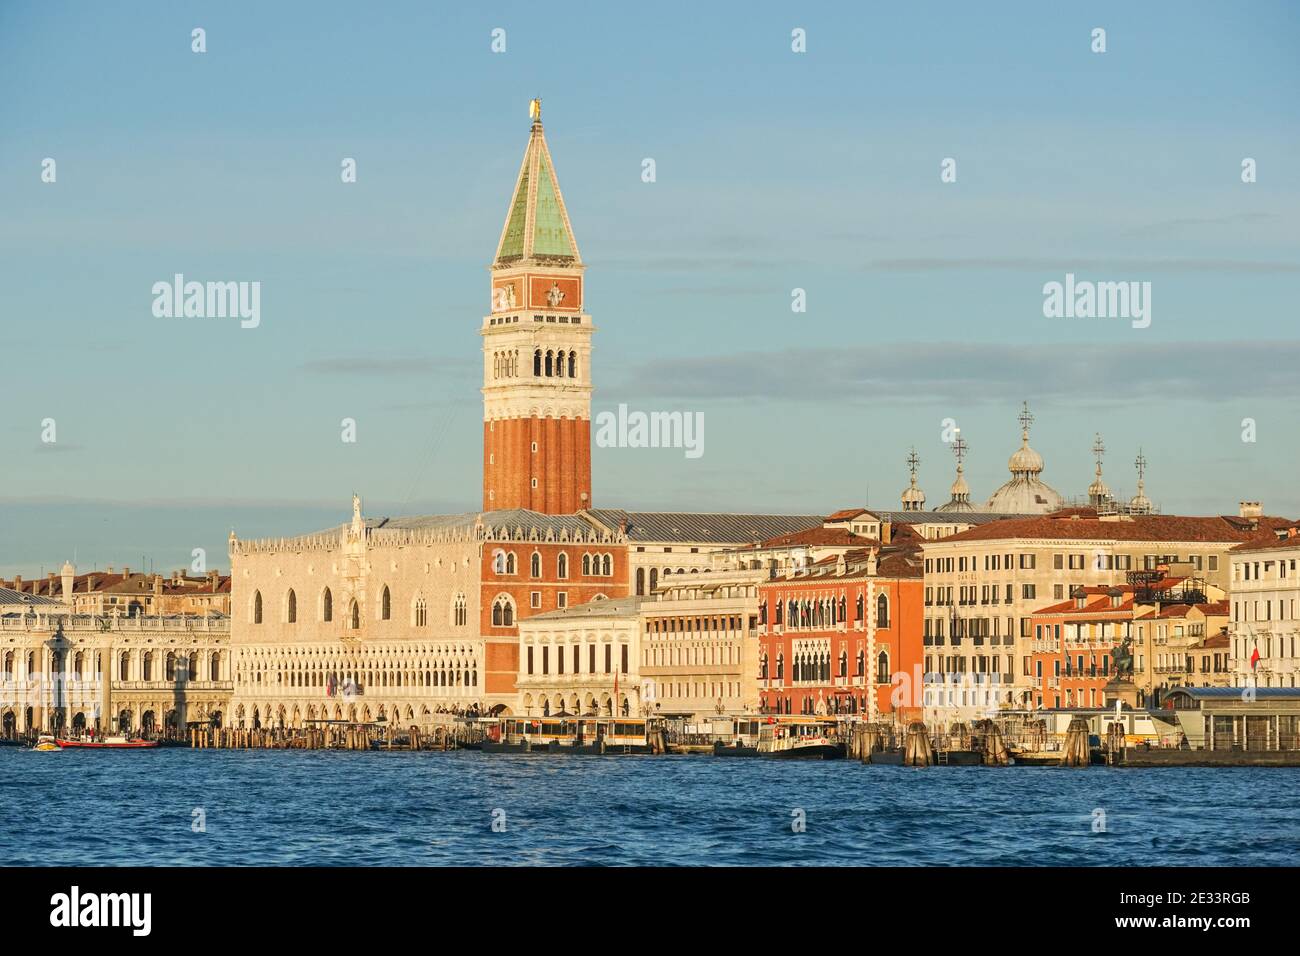 Vue panoramique de Venise au lever du soleil avec le Campanile St Marc et le Palais des Doges, Italie Banque D'Images